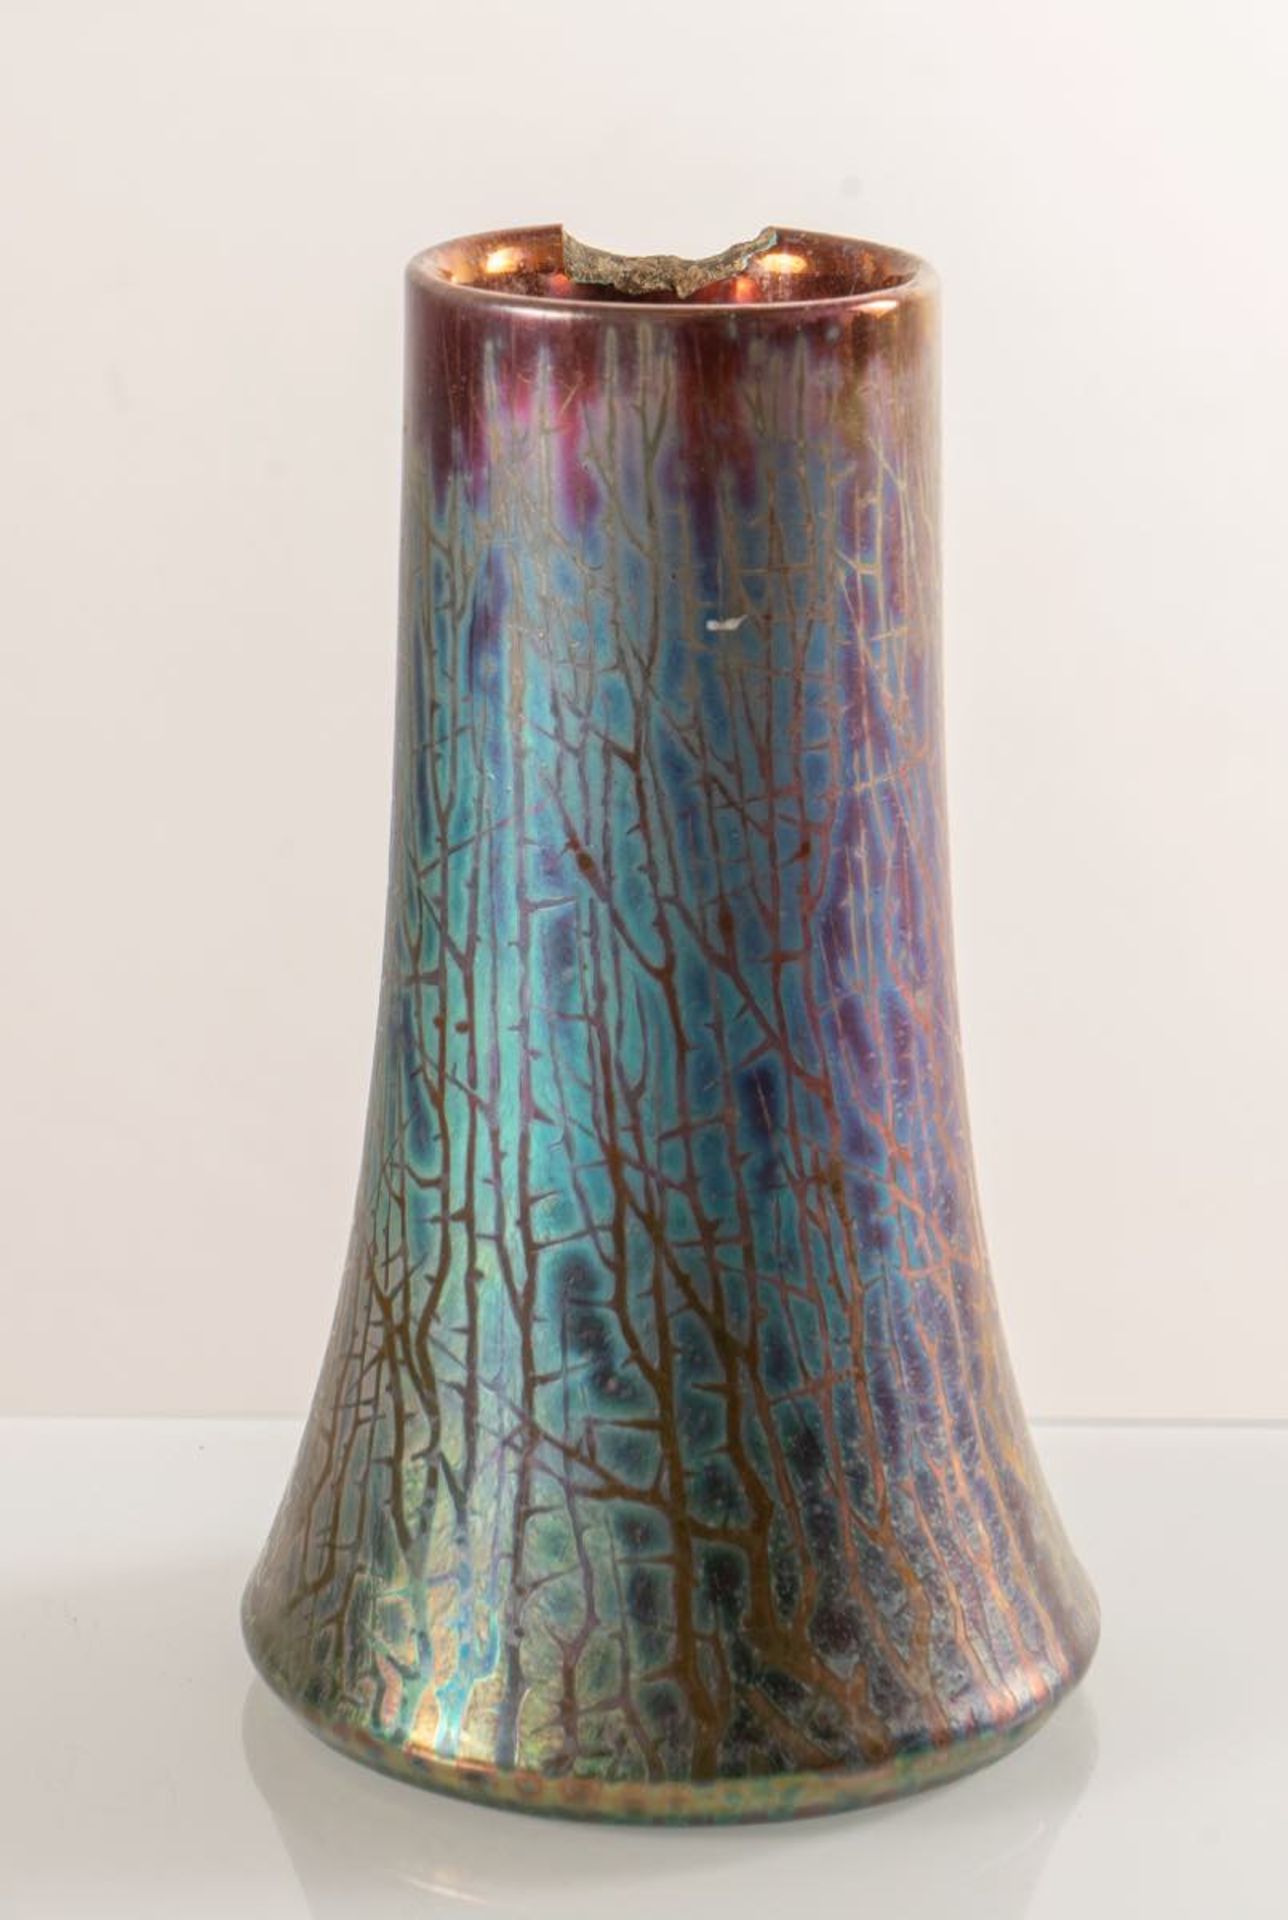 Clément Massier, Vaso tronco-conico in ceramica, 1890 - 1910.Corpo a sezione circolare, superficie